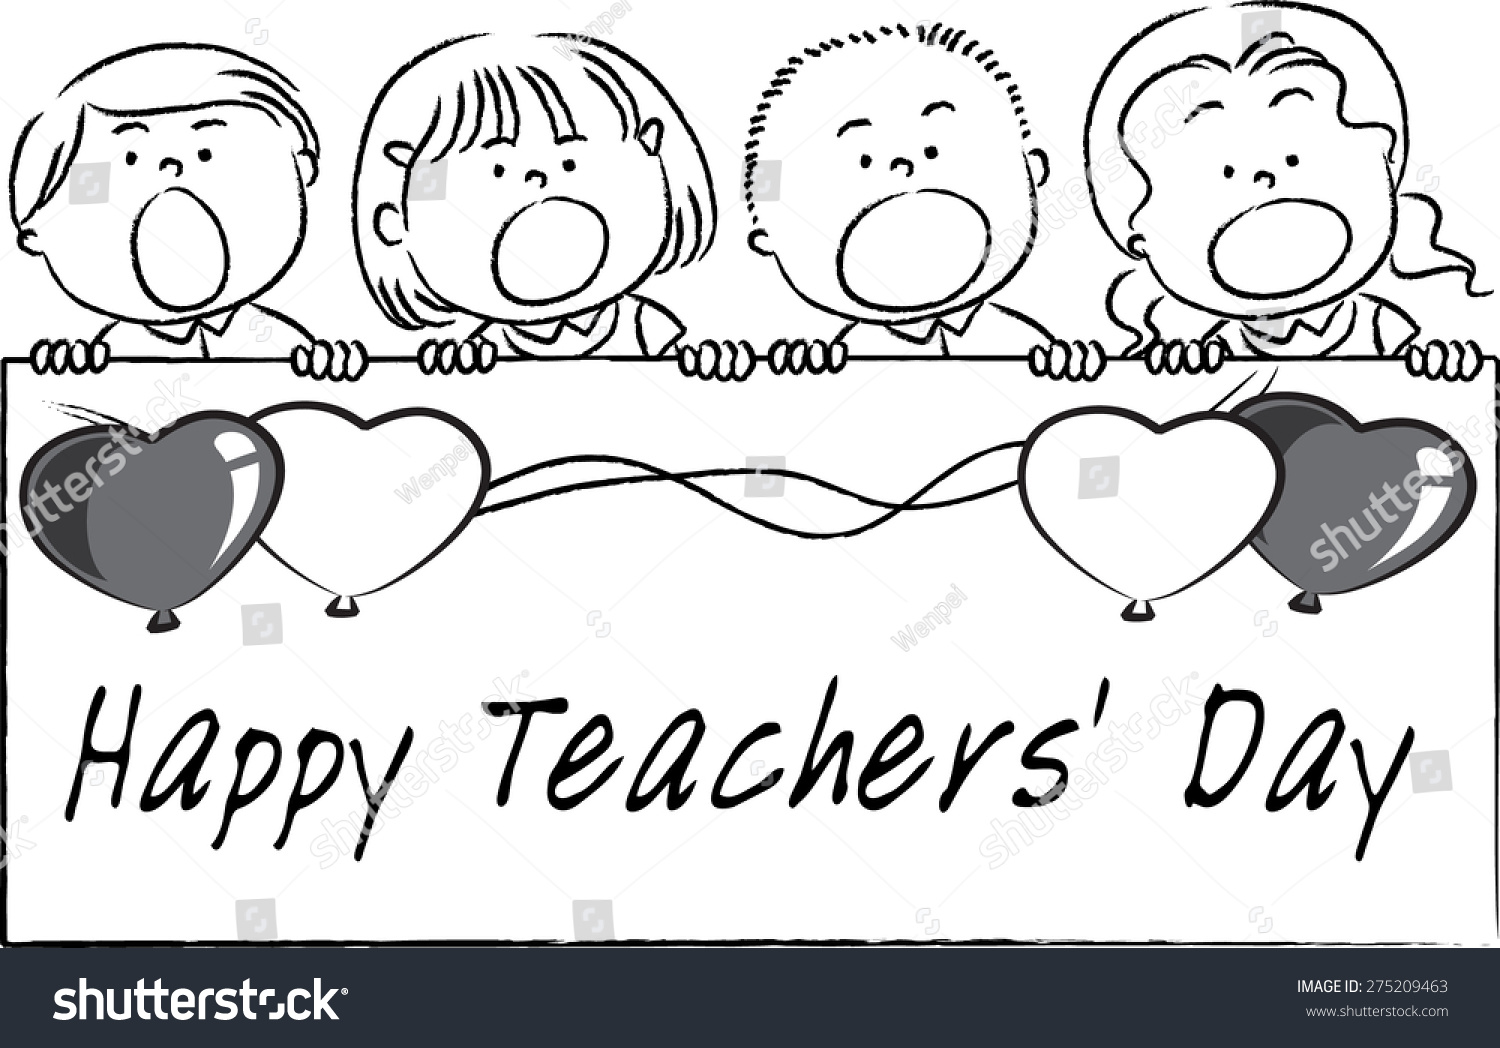 Happy Teachers Day Stock Vector 275209463 : Shutterstock